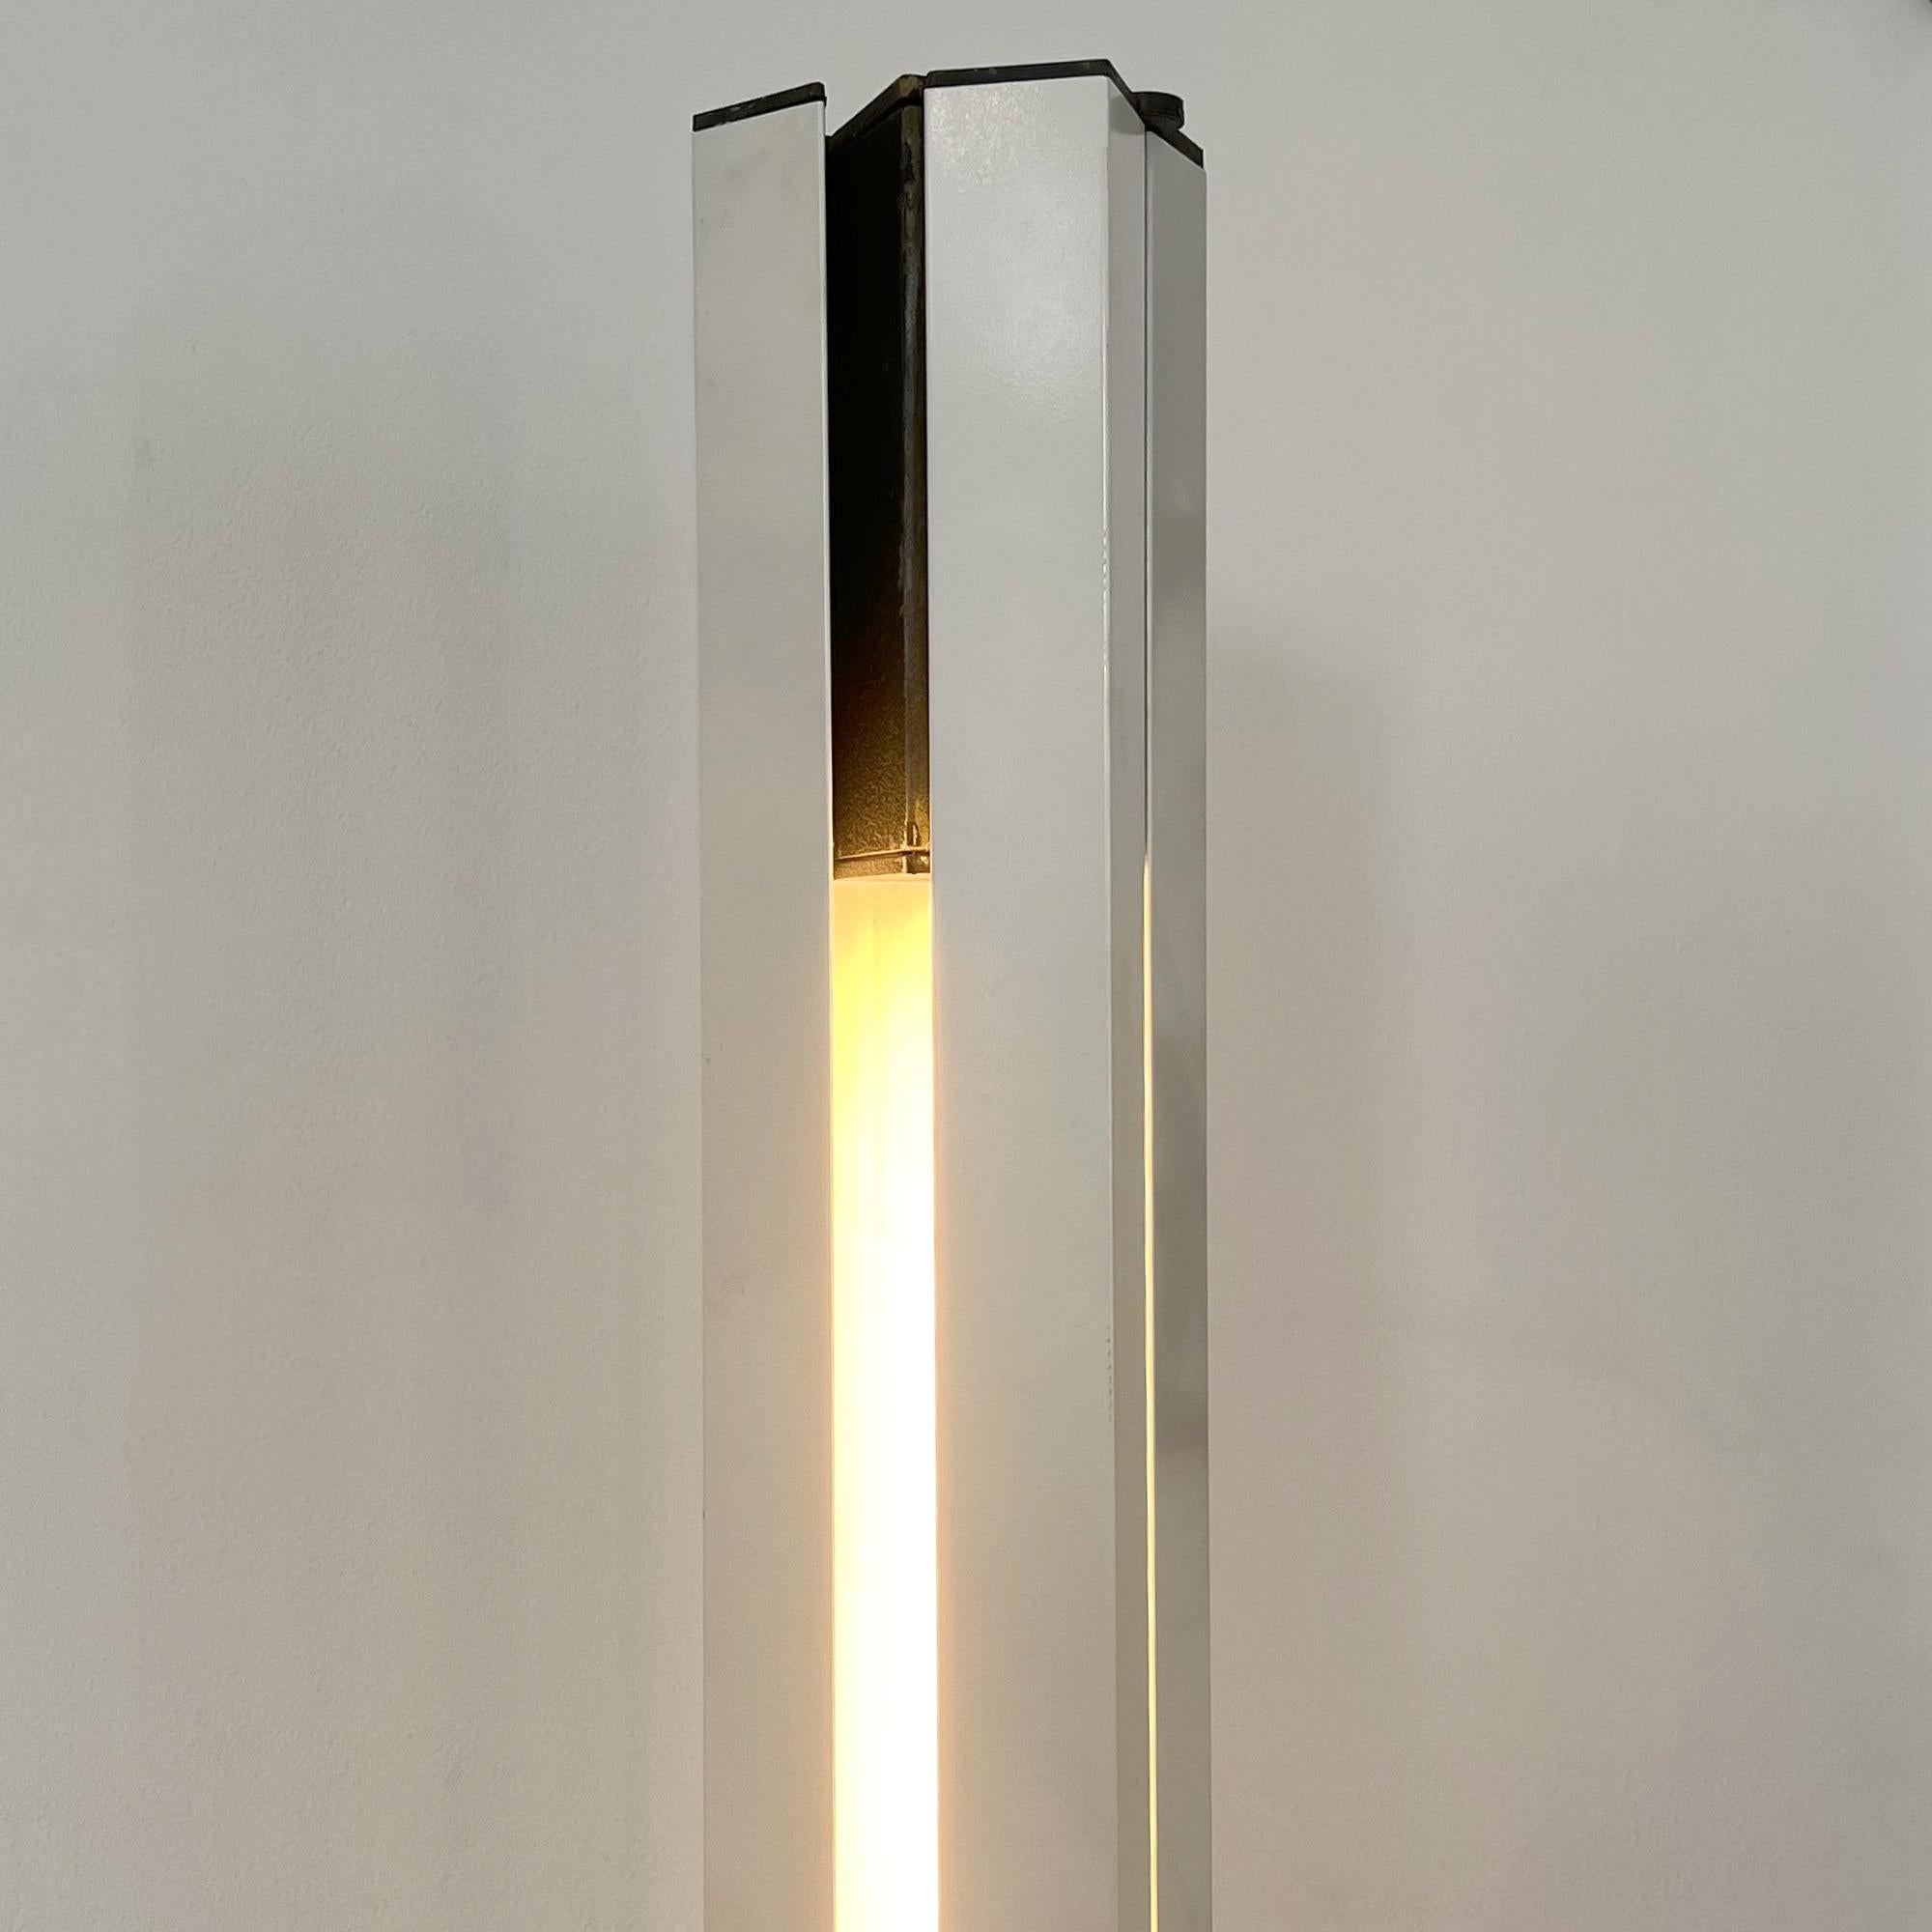 Floor Lamp 14104 Moonlight by Ettore Sottsass for Arredoluce, 1971 For Sale 5